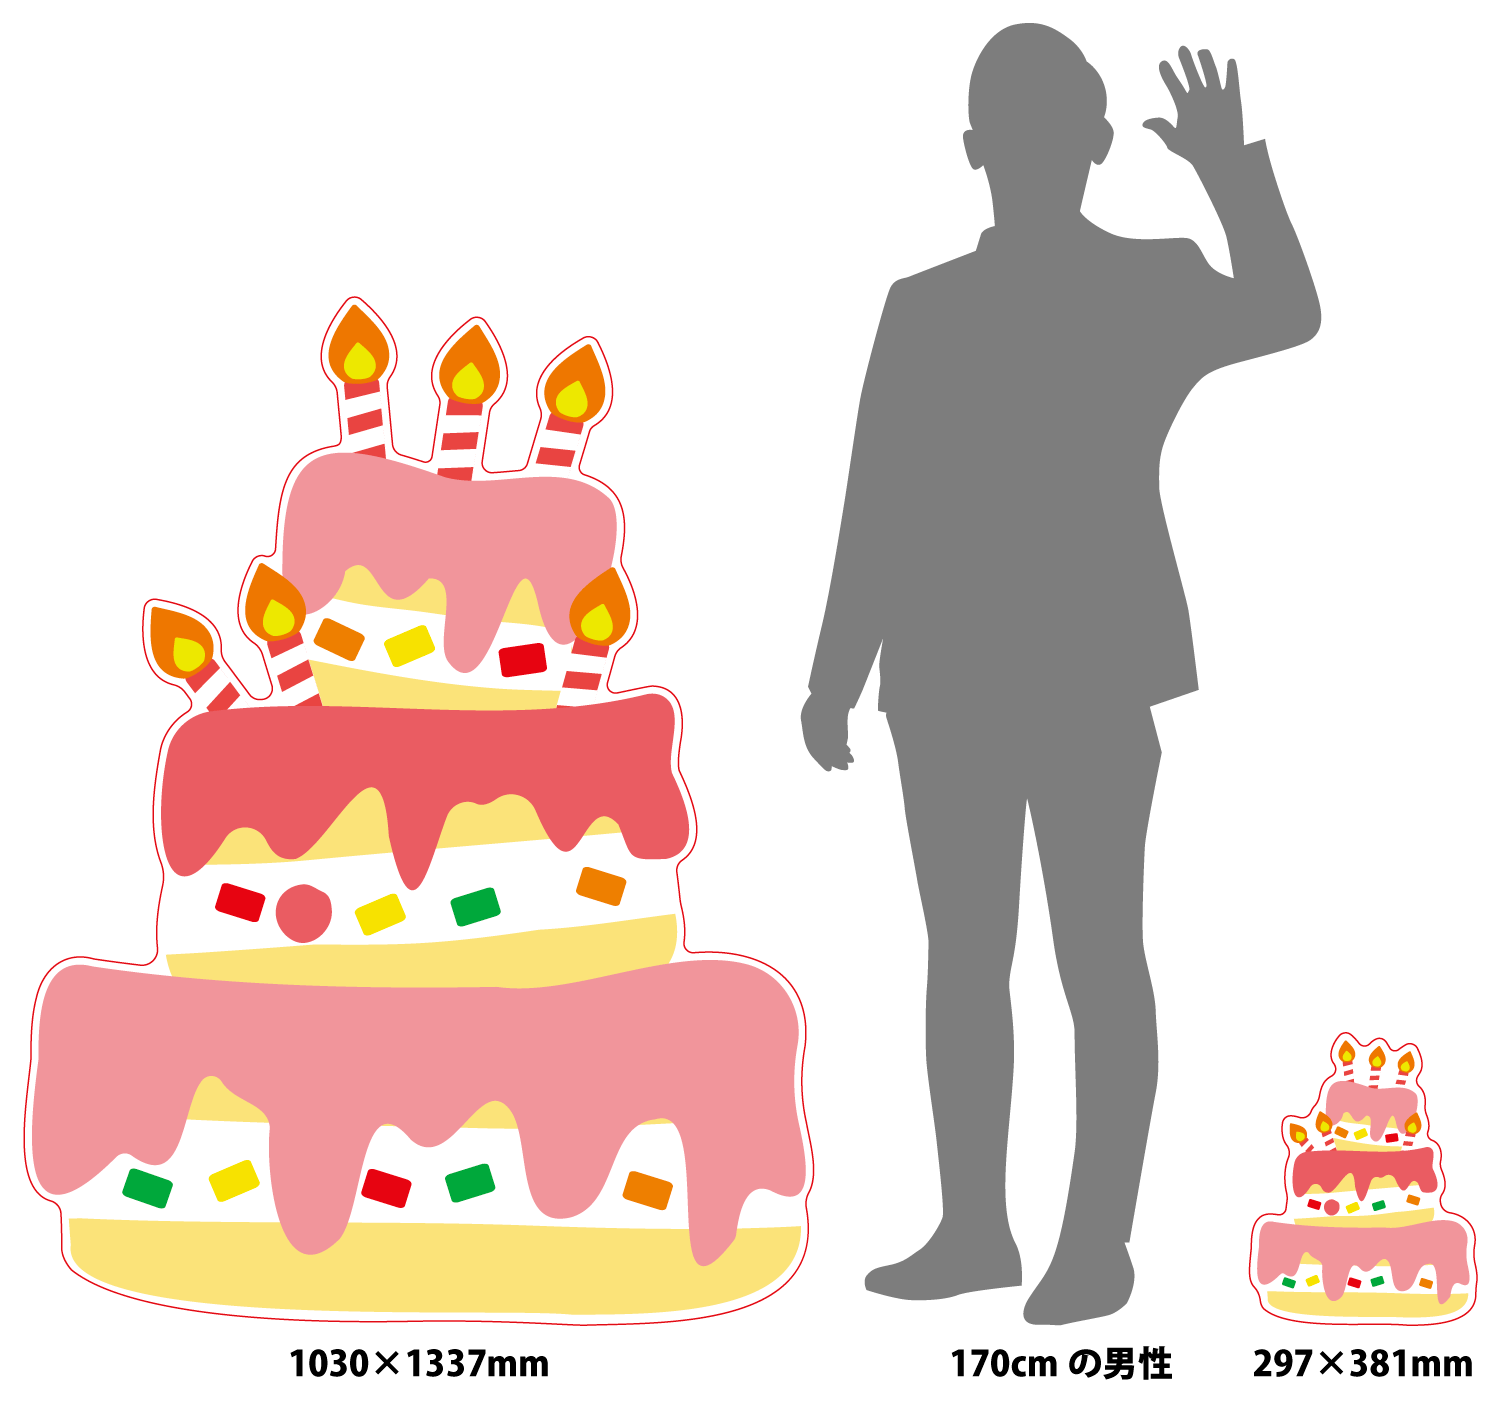 フリー素材13 お祝いごとに大活躍 カラフルなケーキのイラスト プリオ